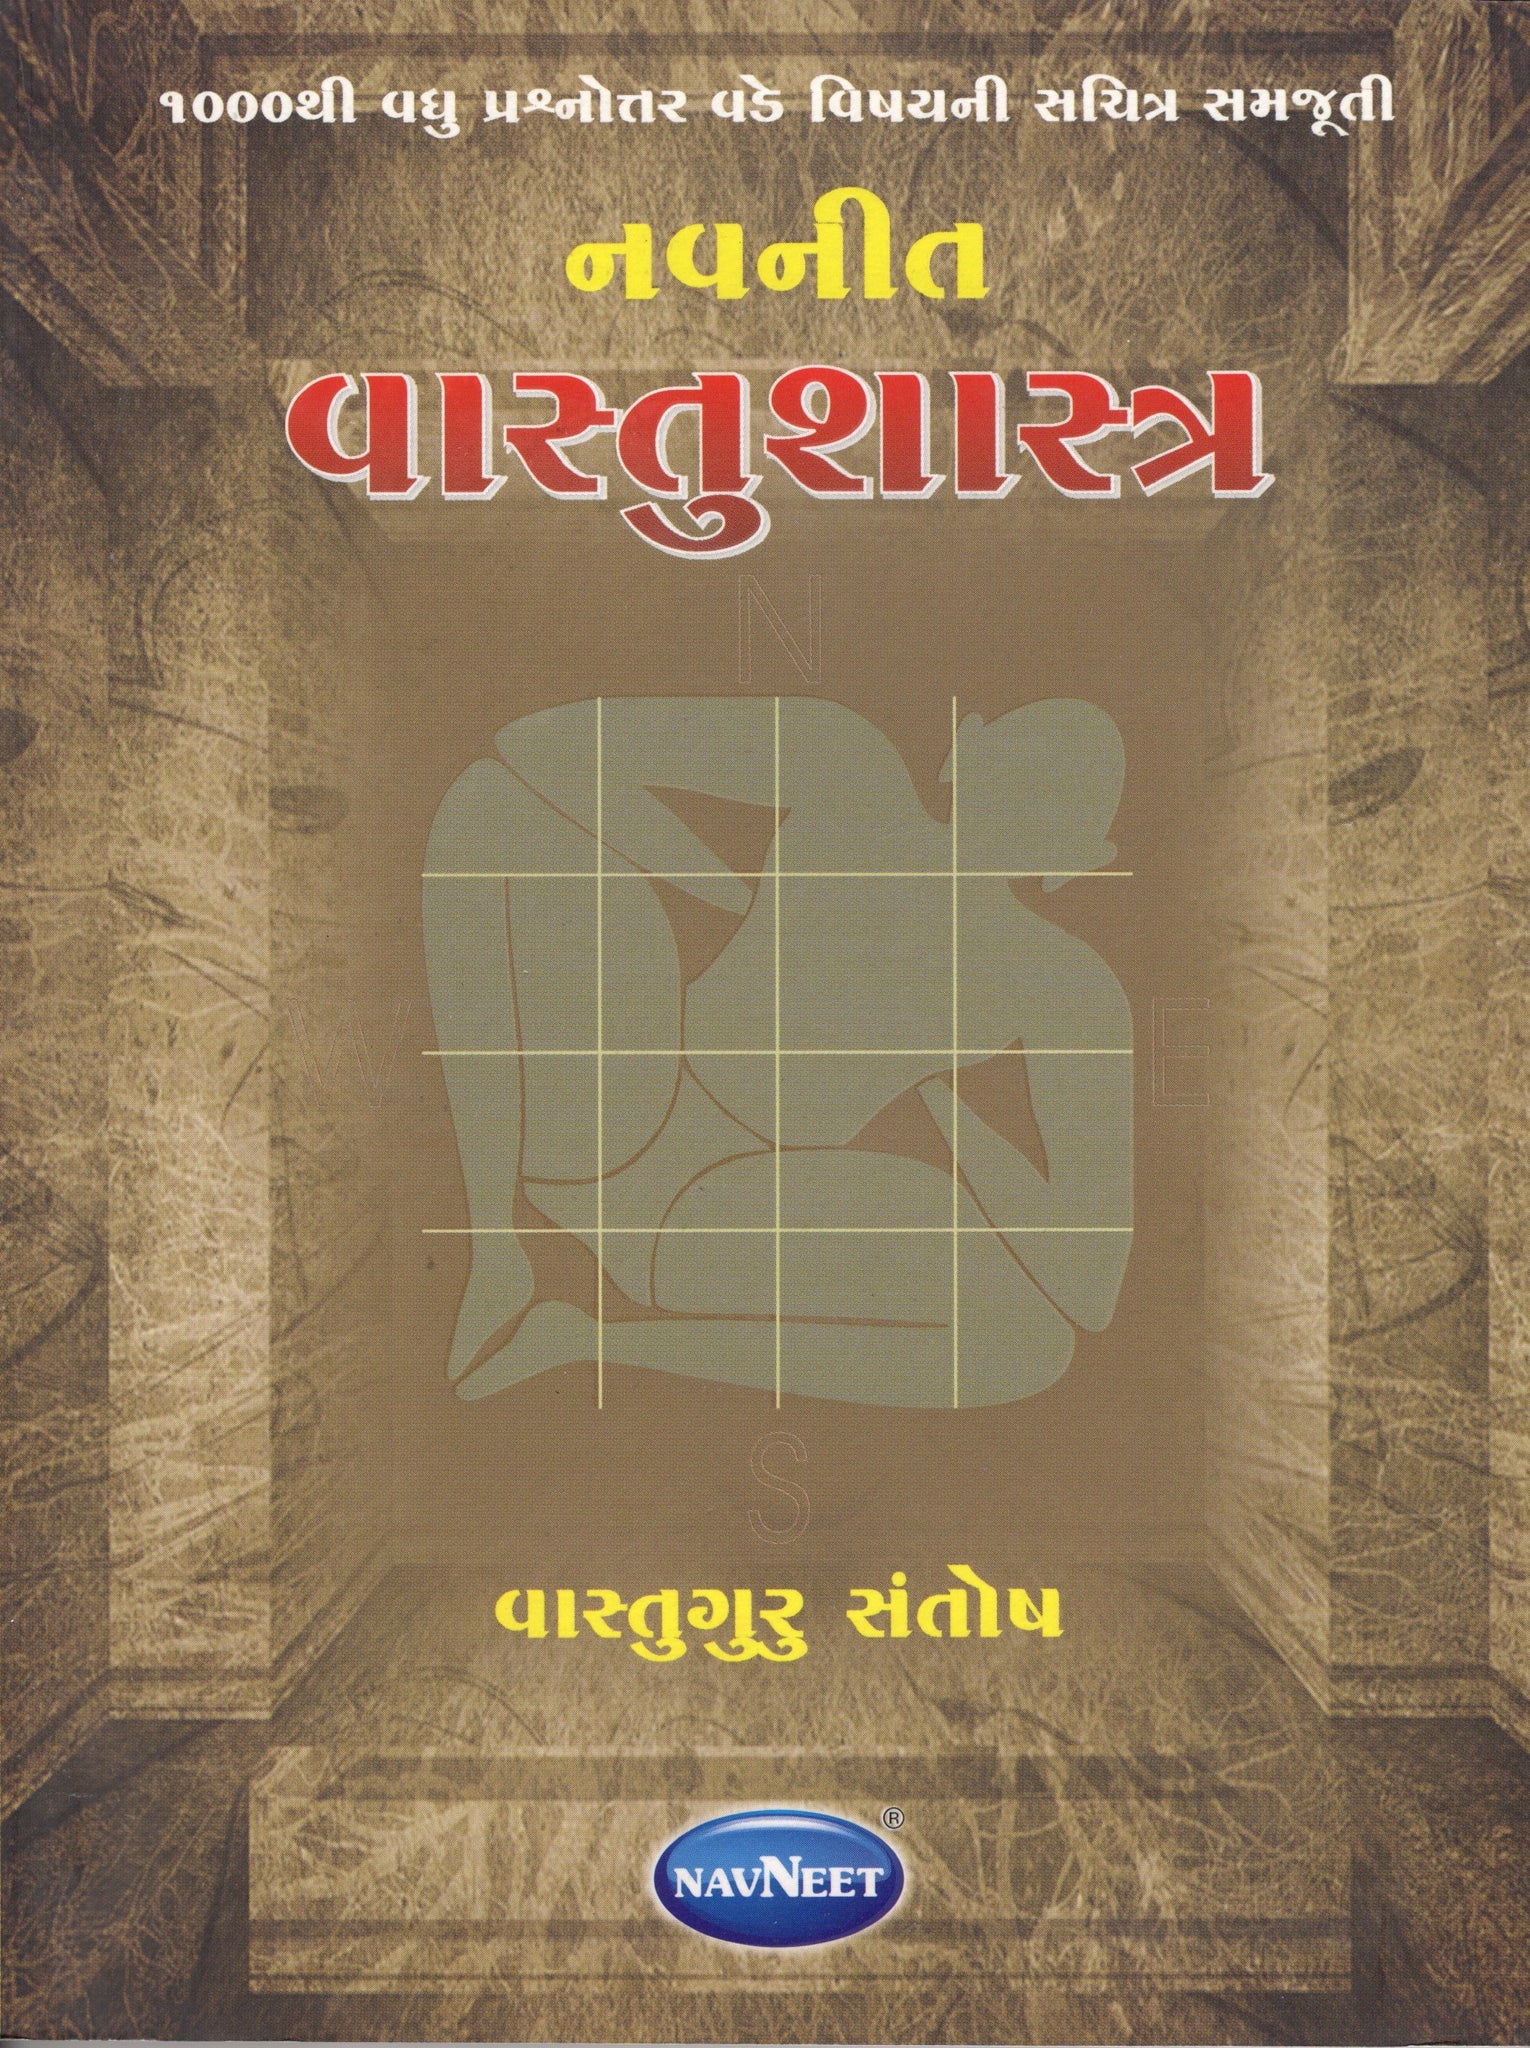 Vastushastra - Gujarati